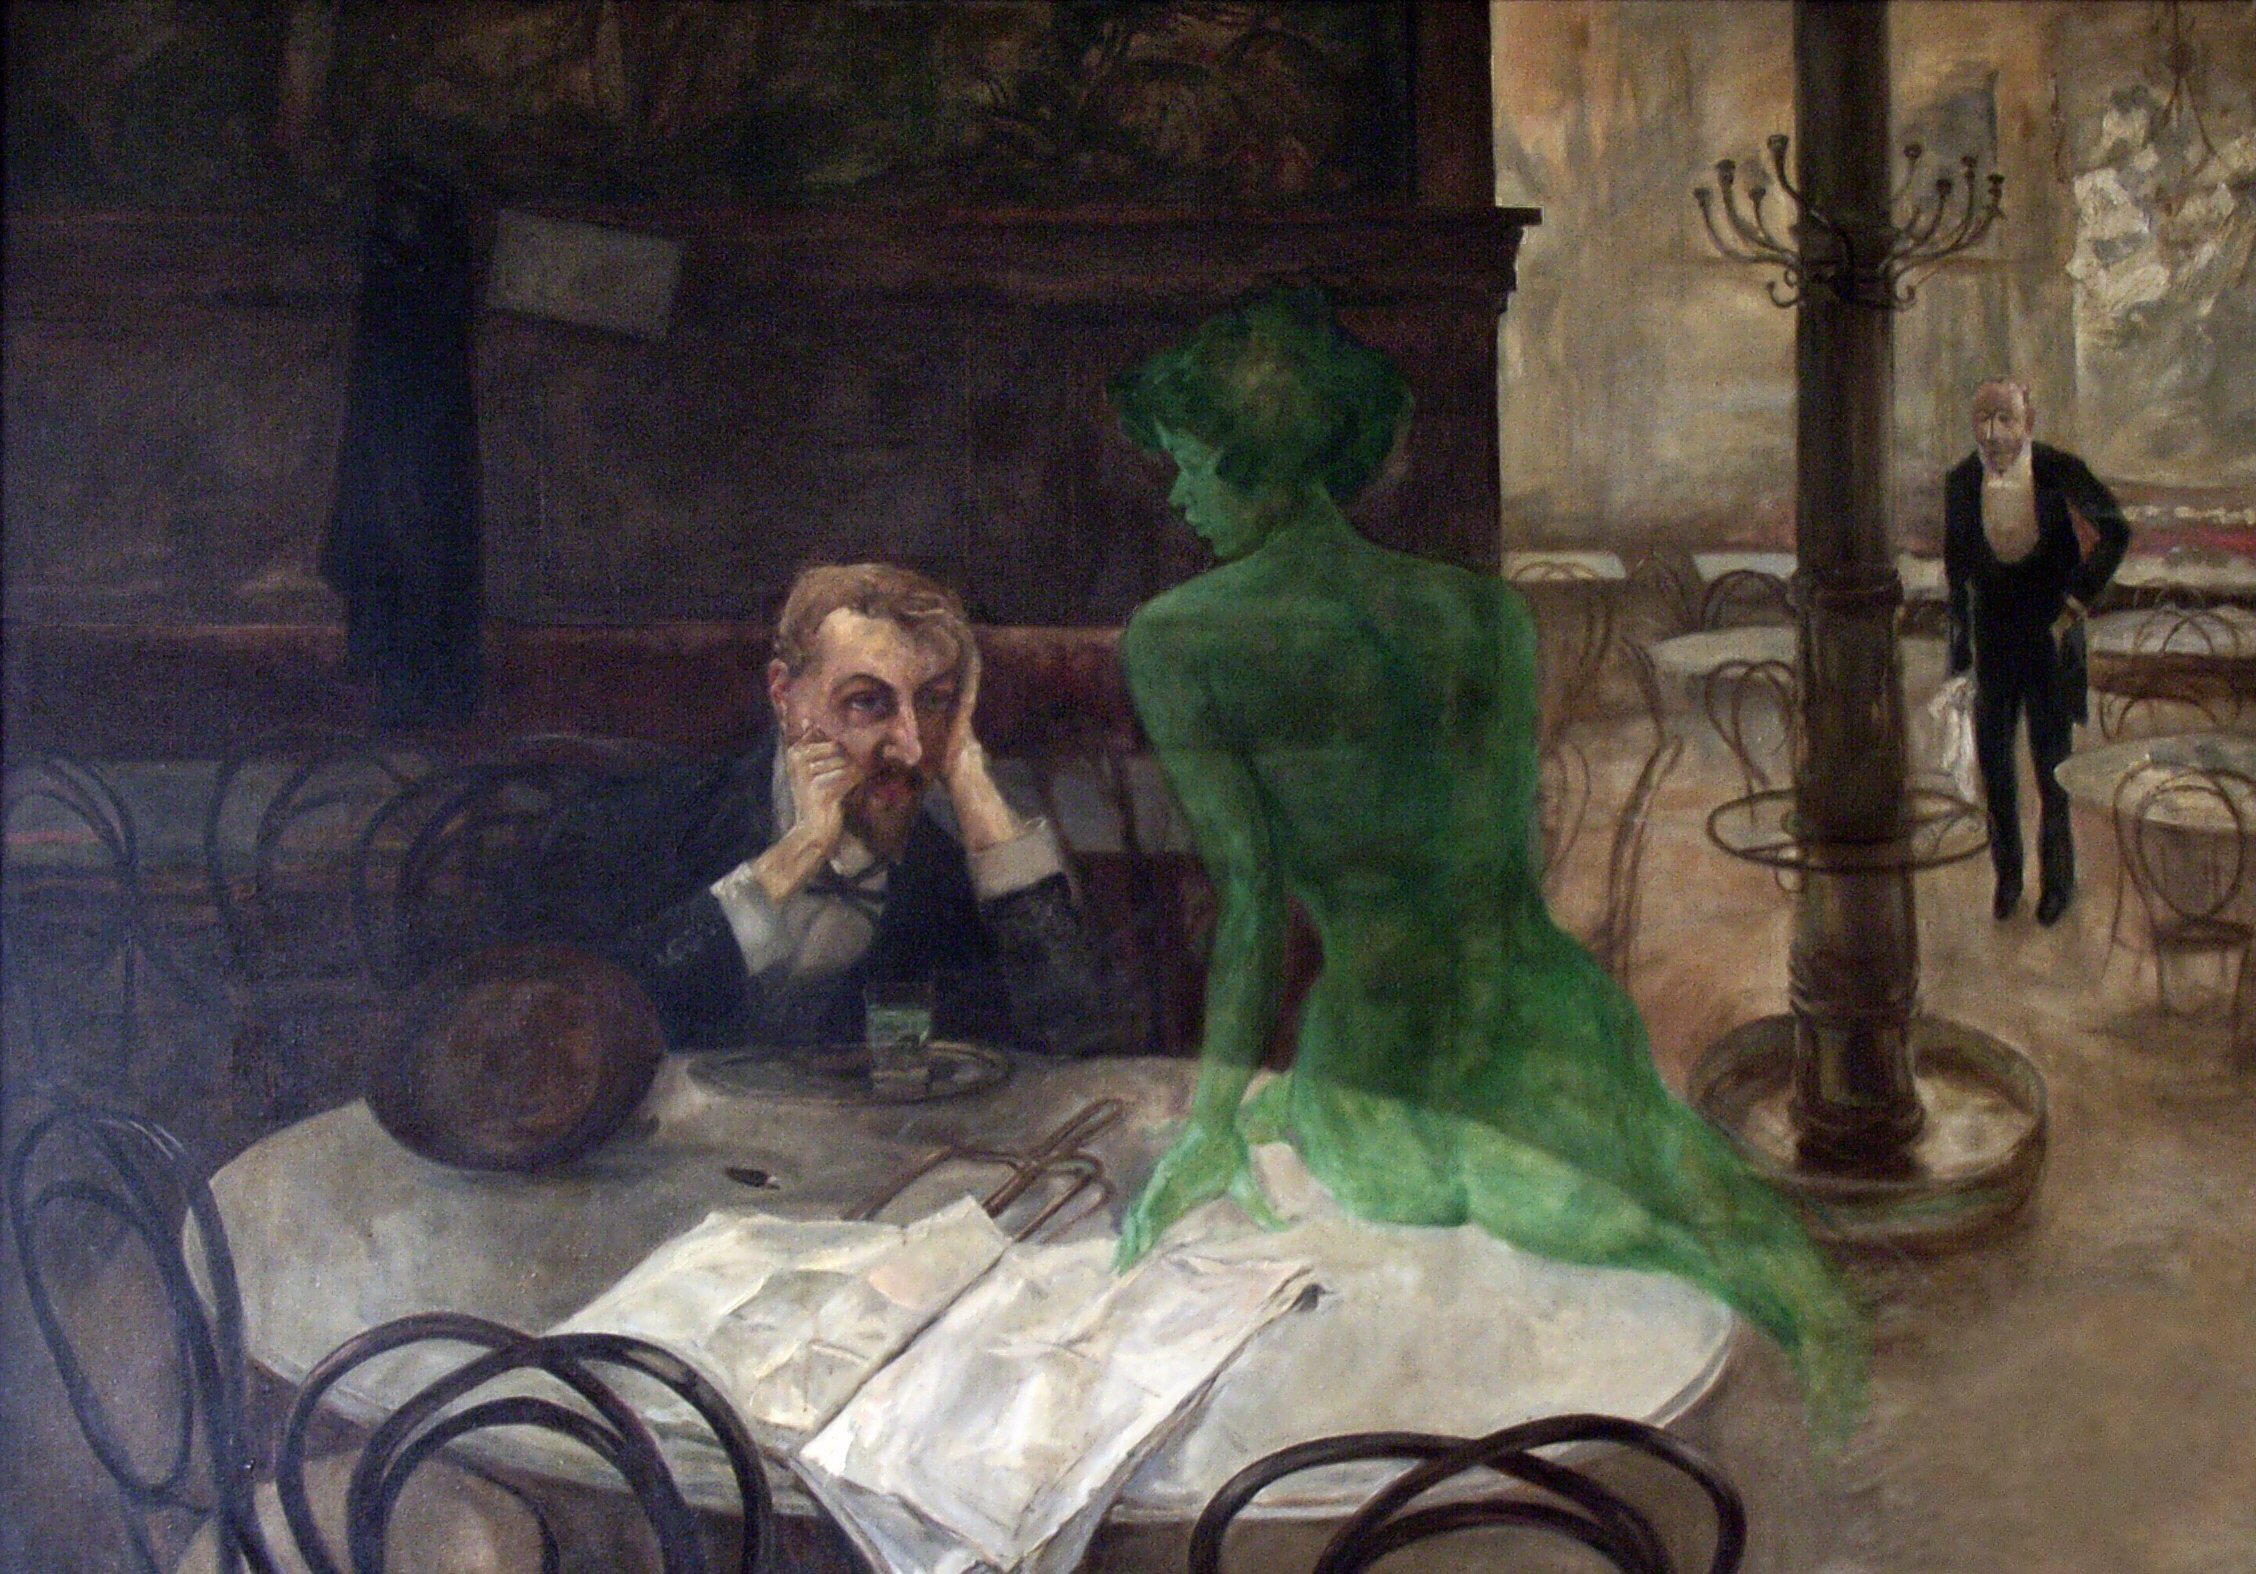 Băutorul de absint  by Viktor Oliva - 1901 